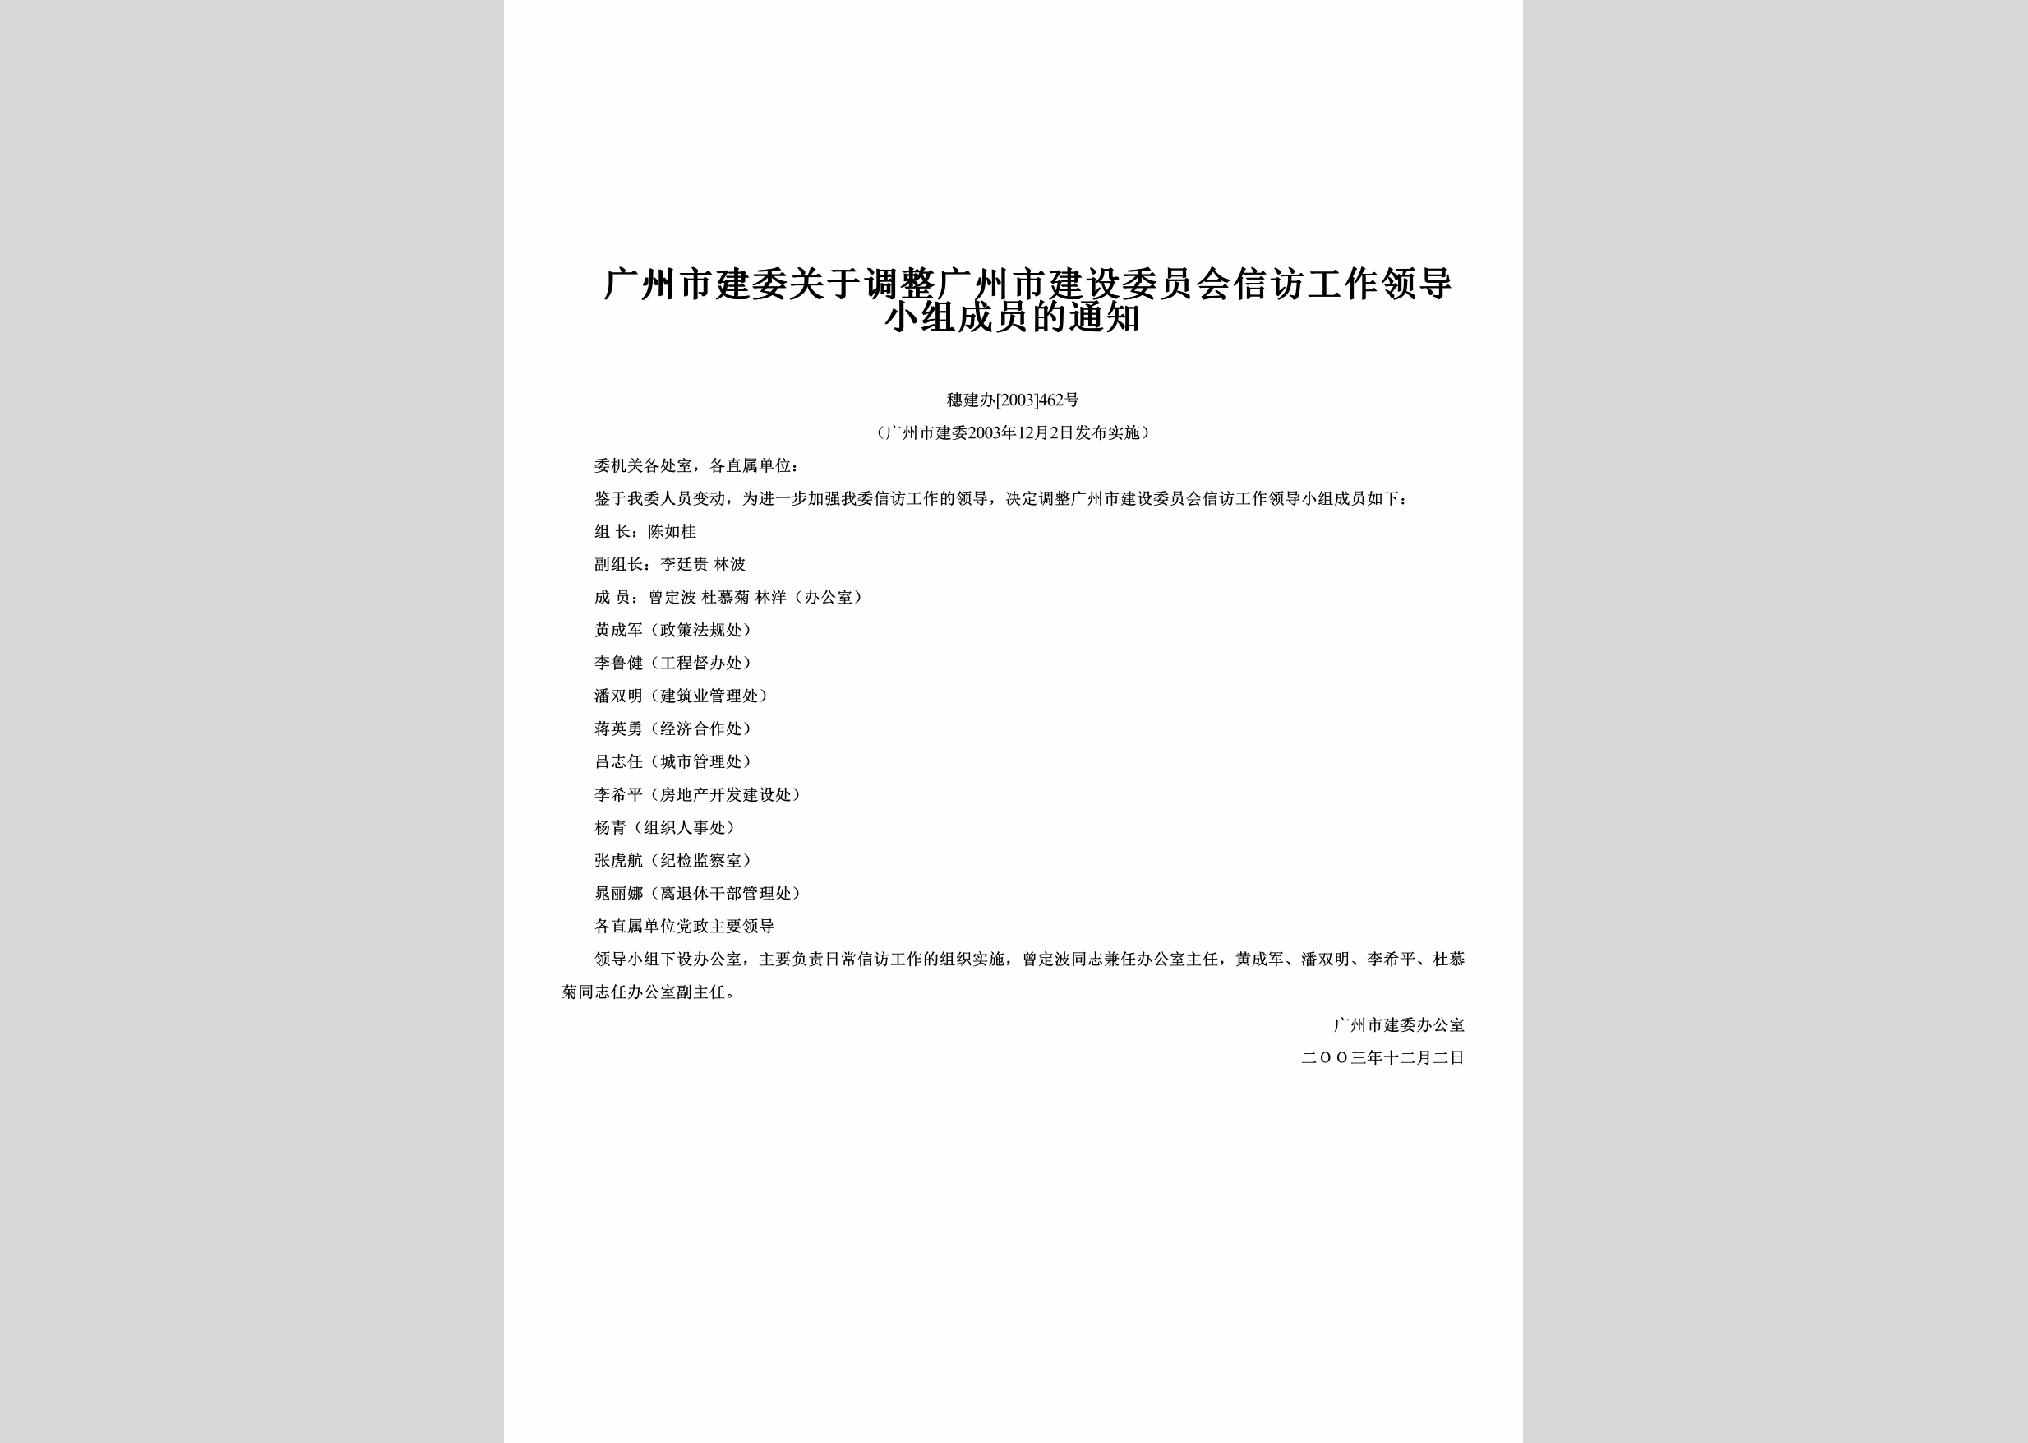 穗建办[2003]462号：关于调整广州市建设委员会信访工作领导小组成员的通知